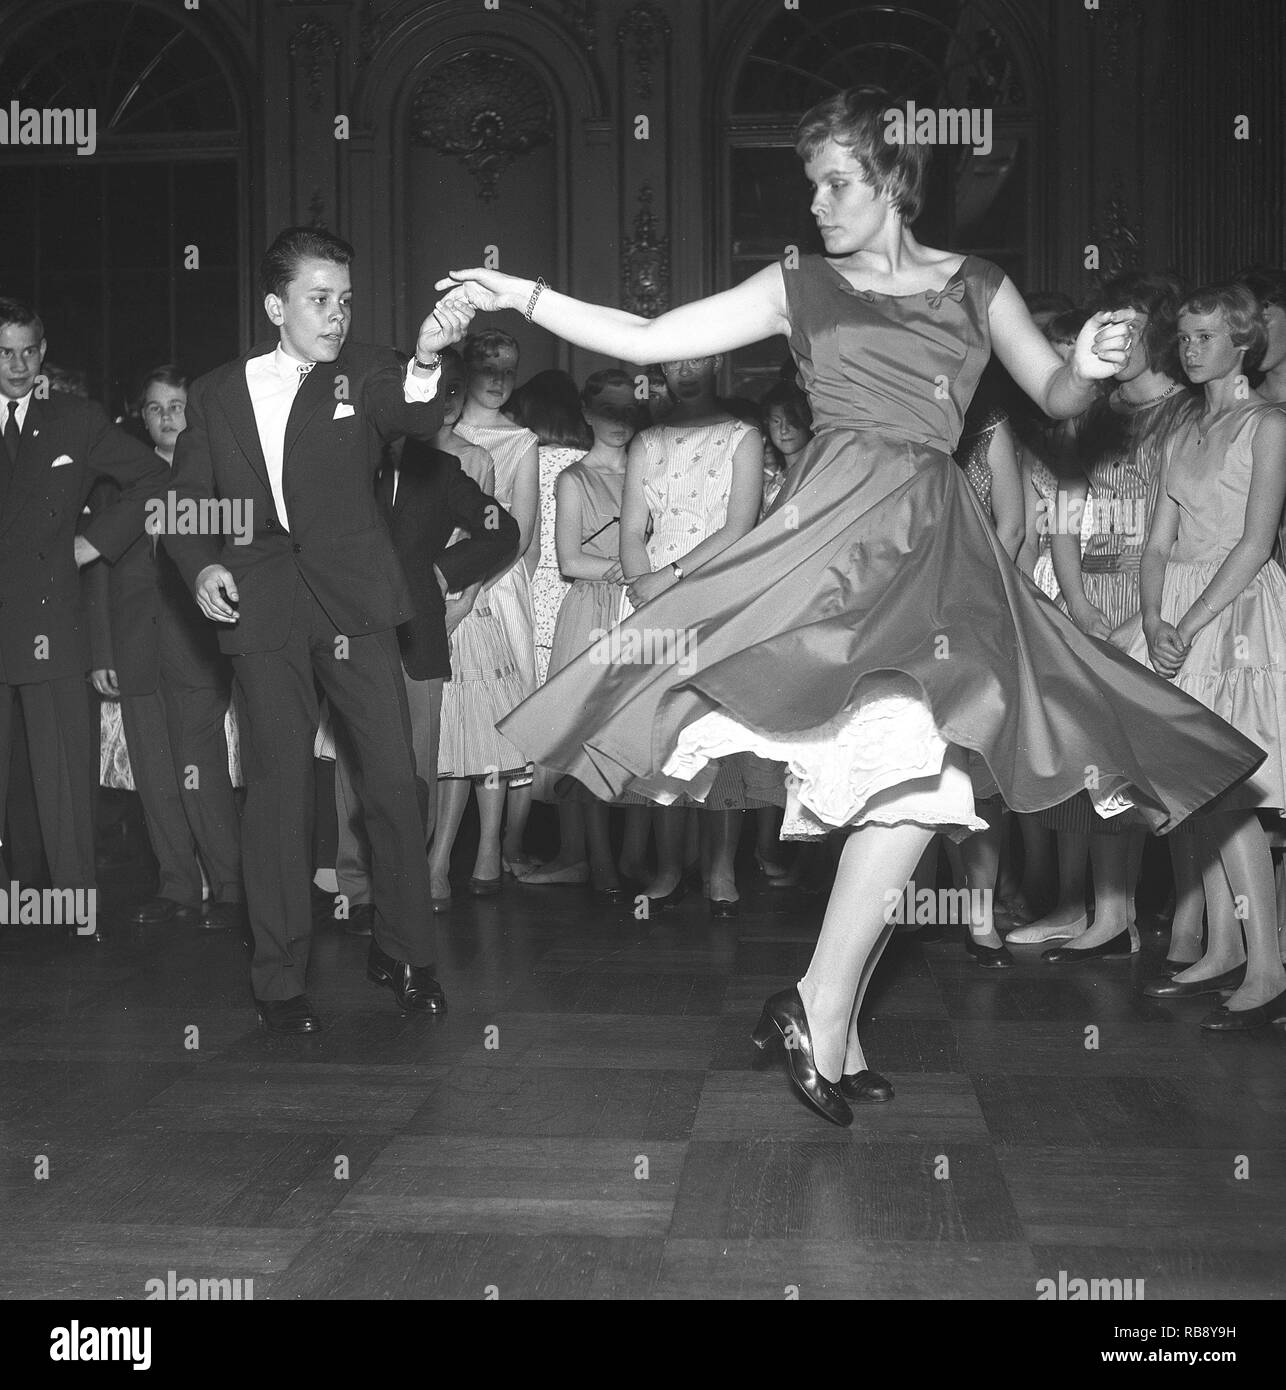 Danser dans les années 50. Un jeune couple est de danser et de passer à la musique. Photo Suède Kristoffersson. Ref CC22-9 Banque D'Images